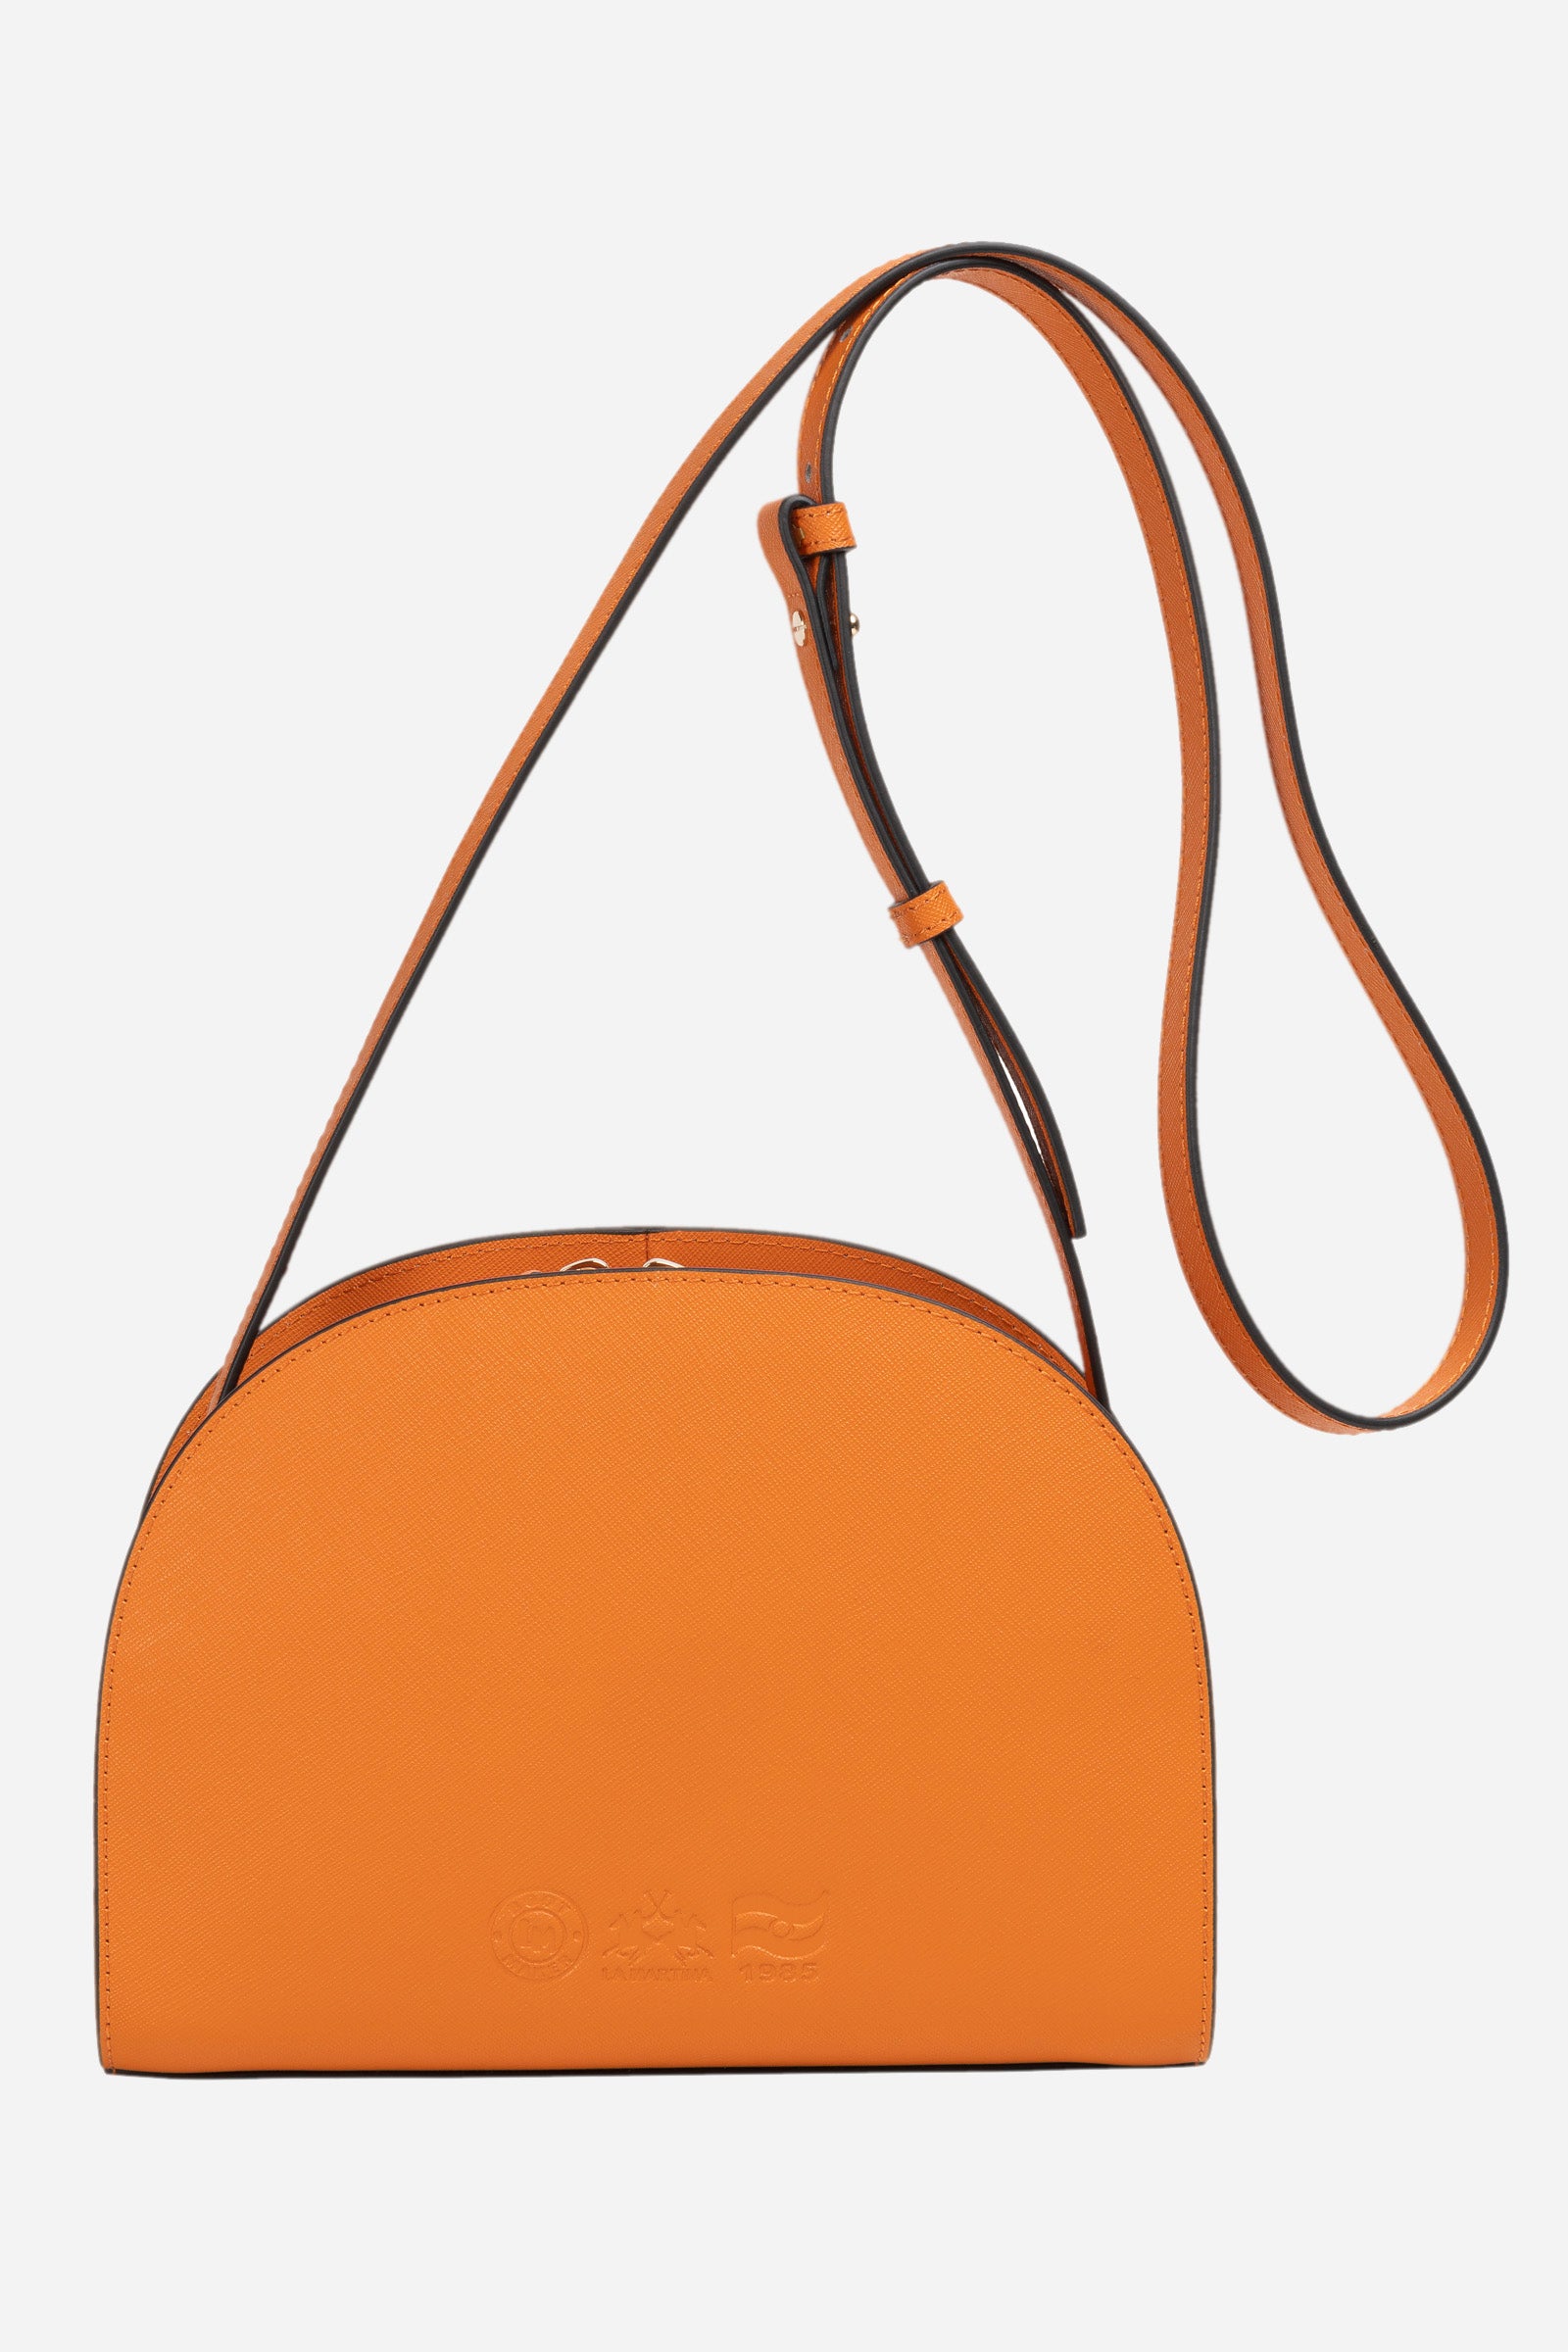 Leather shoulder bag - Karina